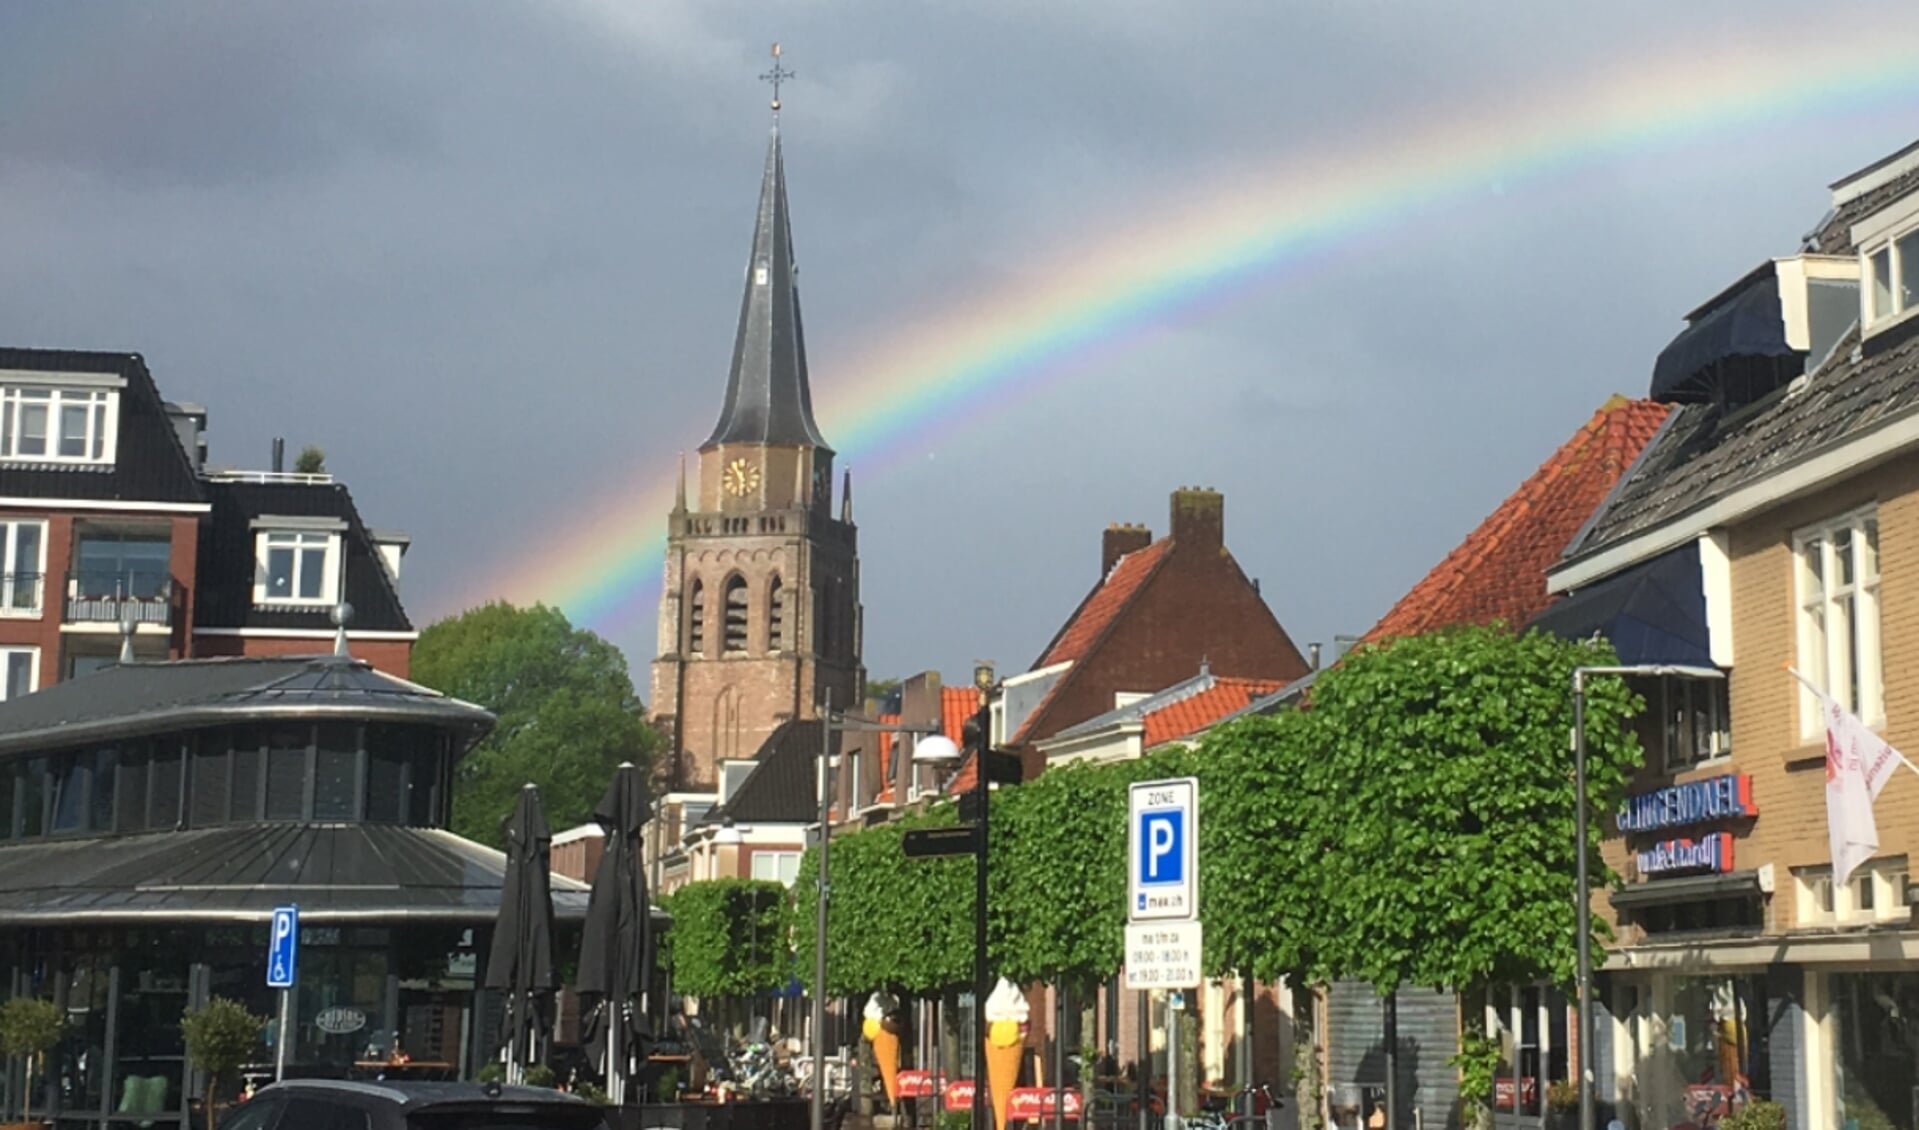 De regenboog boven Voorschoten vertegenwoordigd de diversiteit die zo kenmerkend is voor de ondernemers in Het Hart van Voorschoten. Foto: René Eleveld